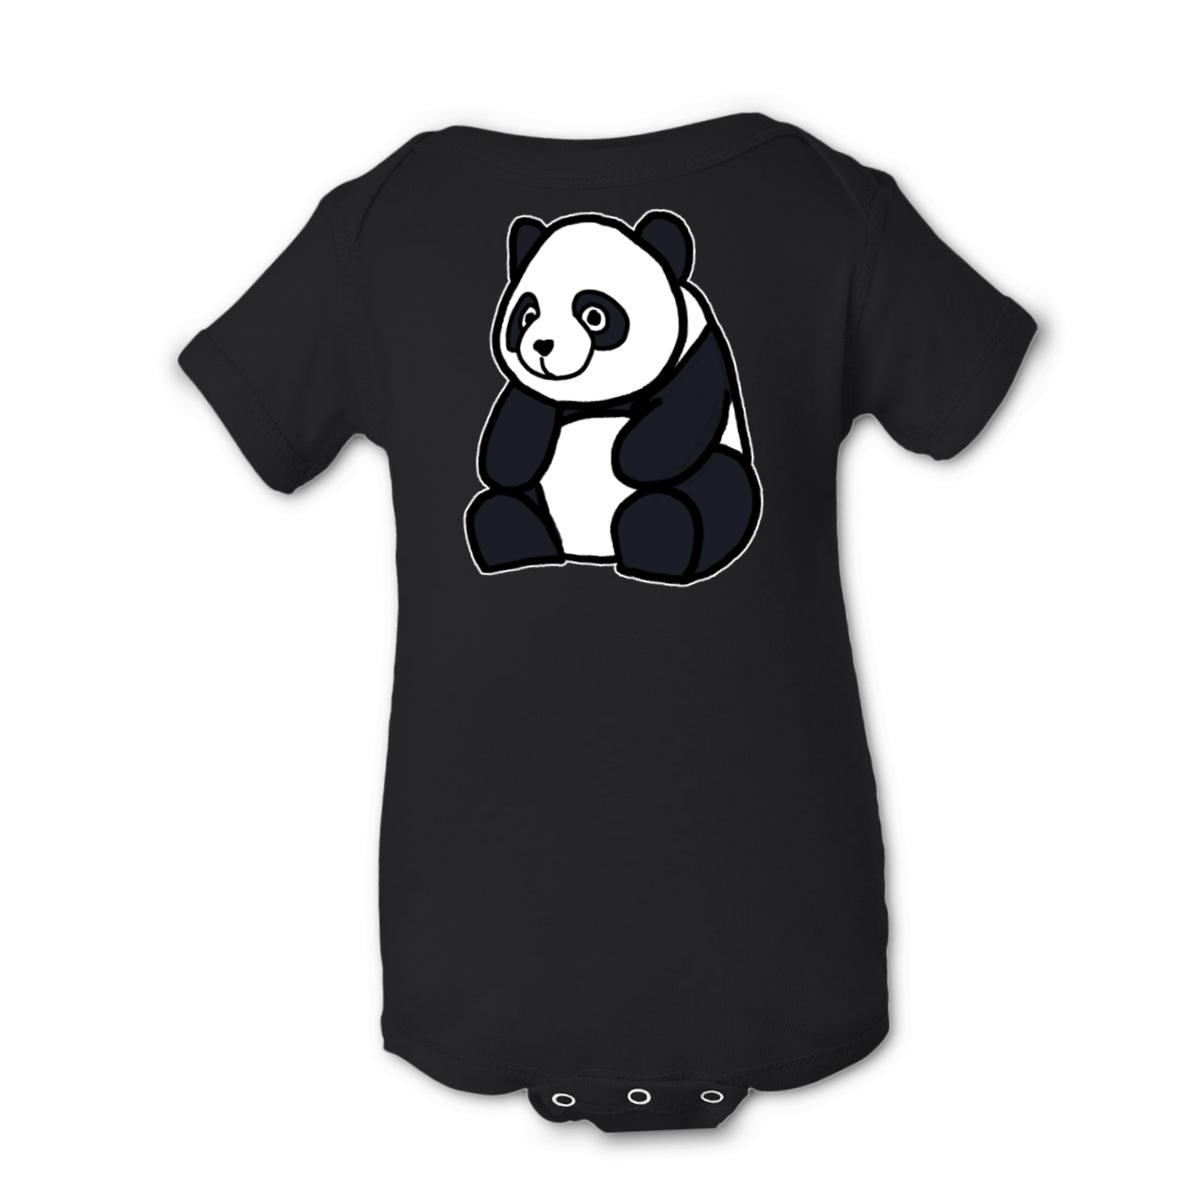 Panda Onesie 18M black